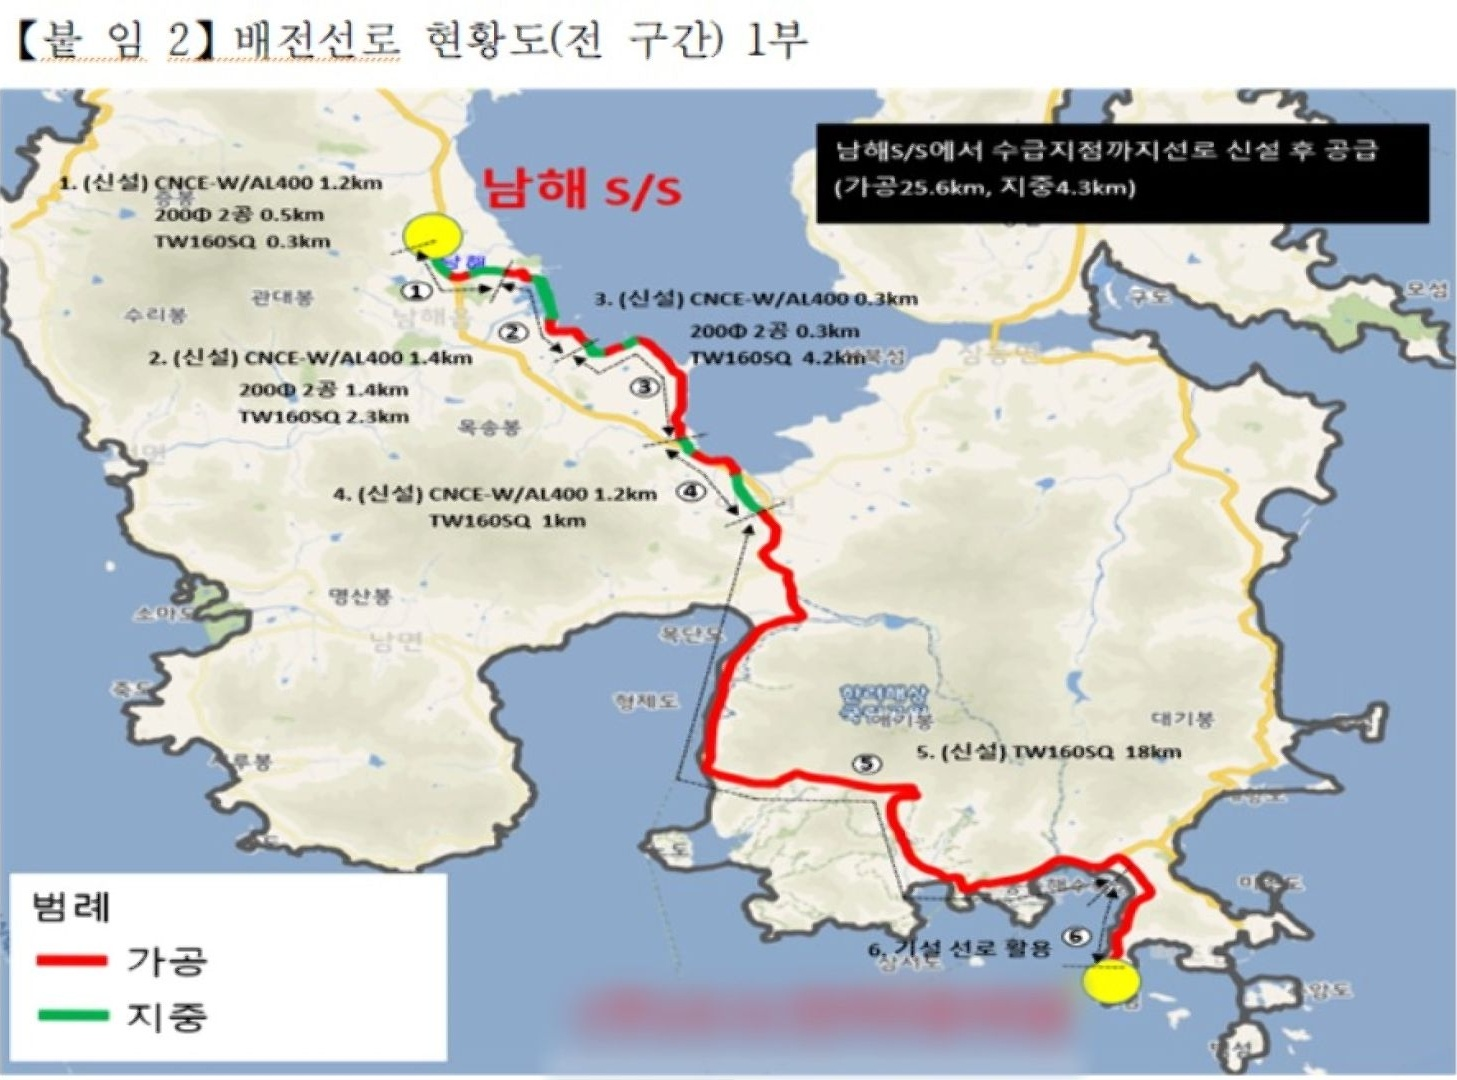 한국전력과 남해군이 공개한 배전선로 현황. 전체 구간은 30km에 이른다.